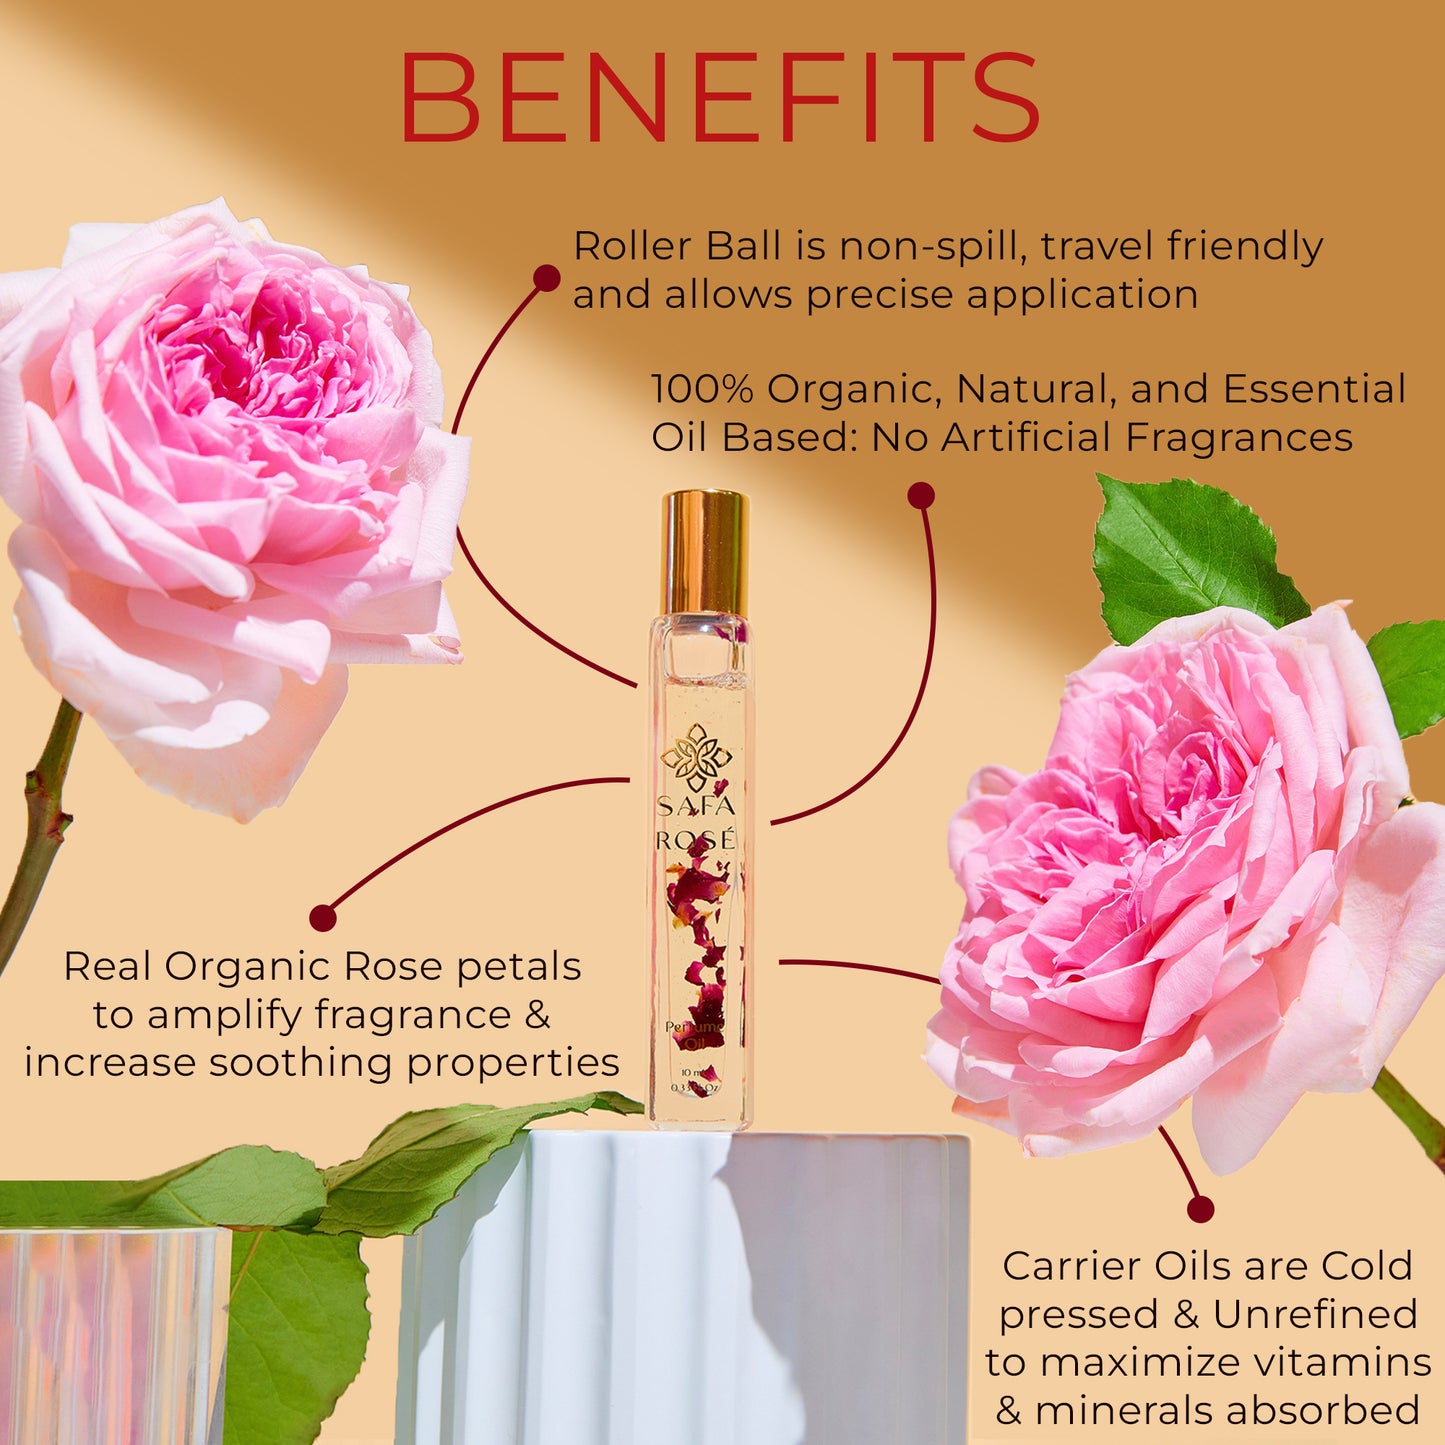 Rosé Perfume Oil